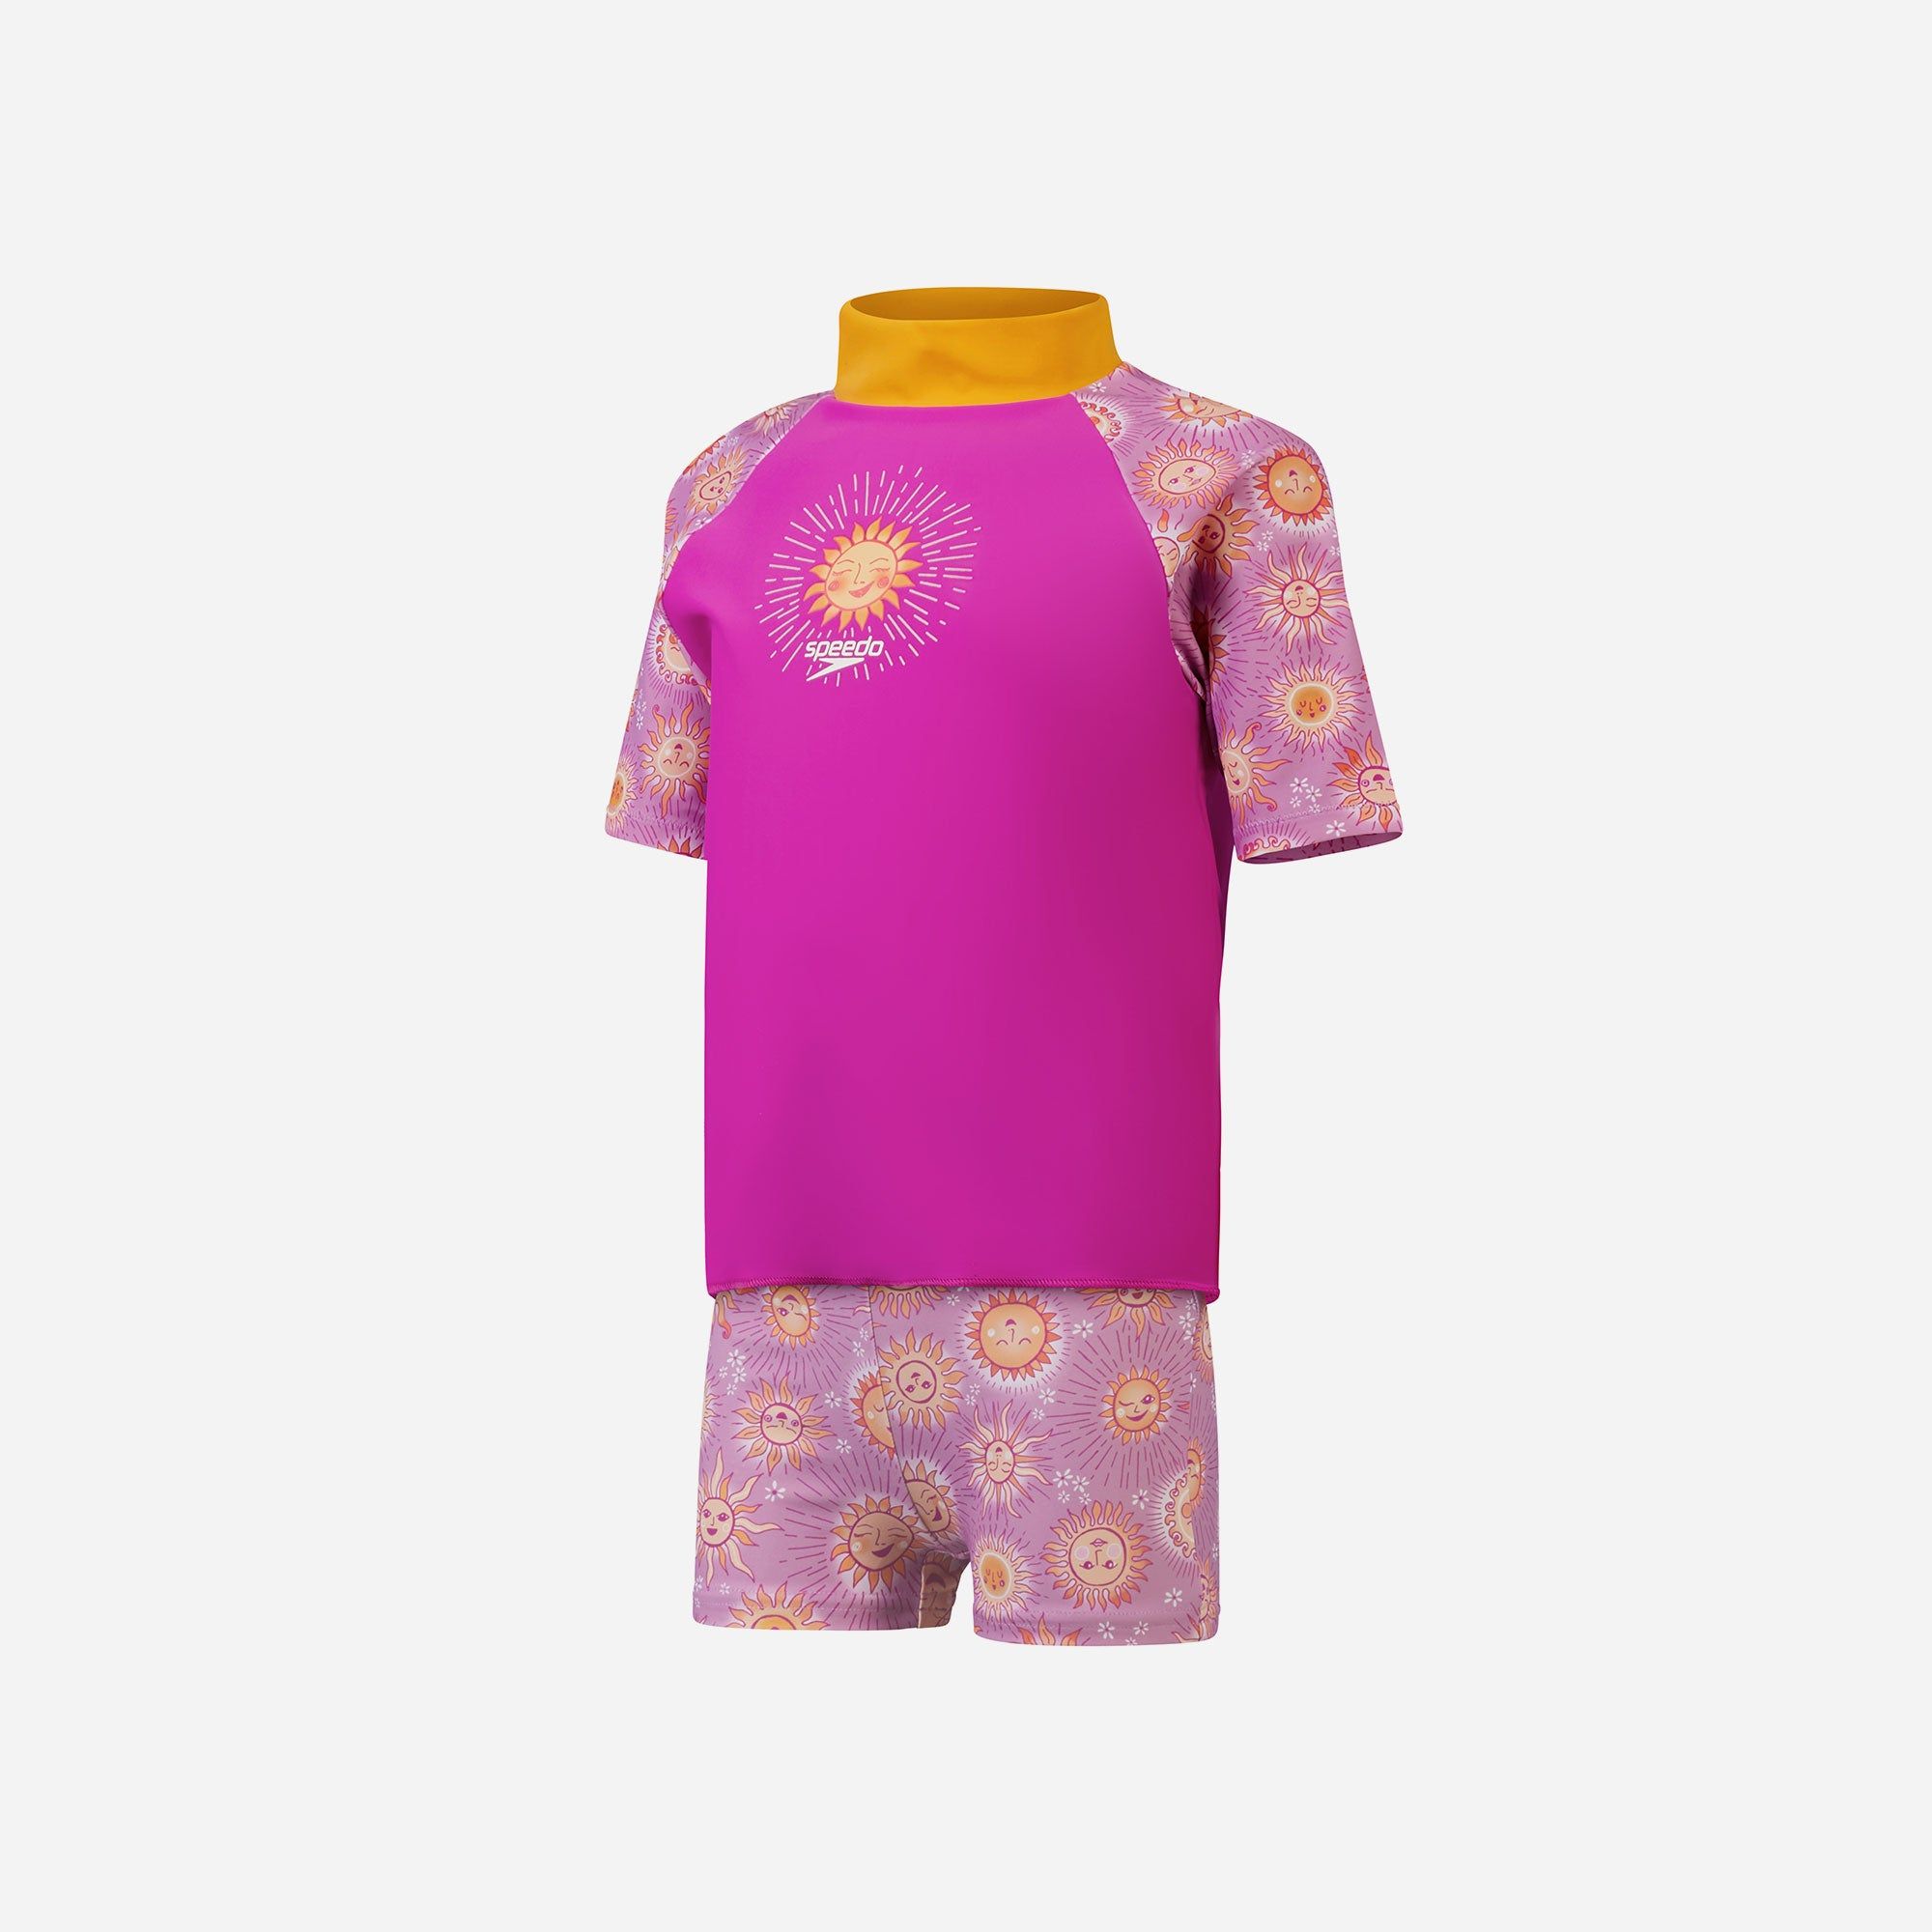 Speedo - Đồ bơi chống nắng bé gái Toddler Girls Short Sleeve Printed Rash Top Set